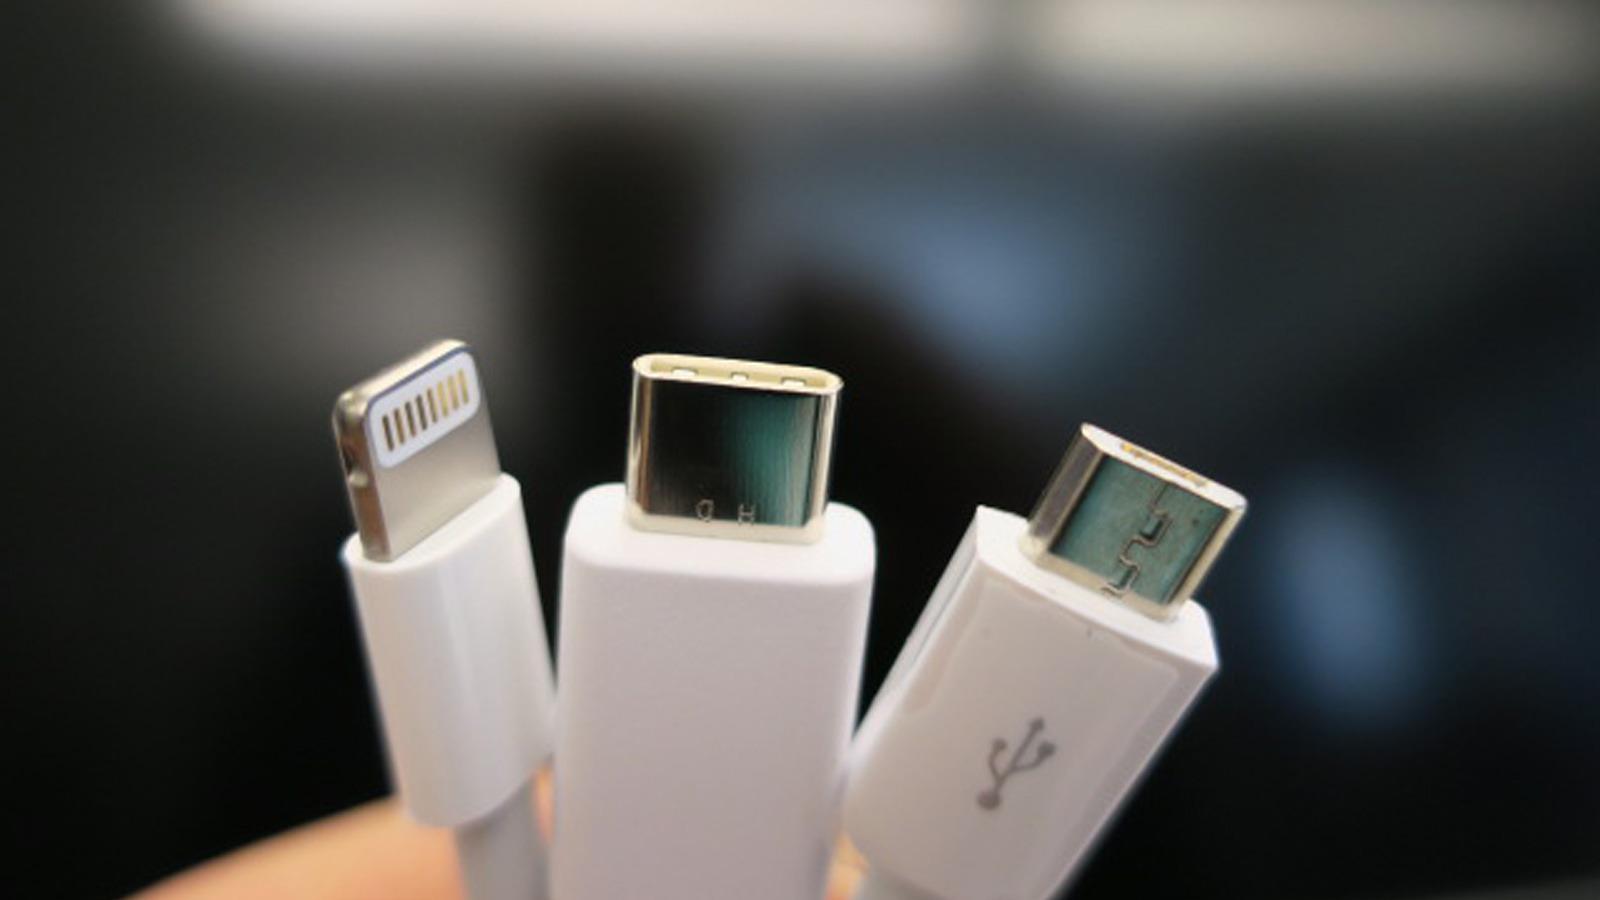 USB Type-C i midten, flankert av Apples Lightning (til venstre) og MicroUSB. Foto: Espen Irwing Swang, Tek.no